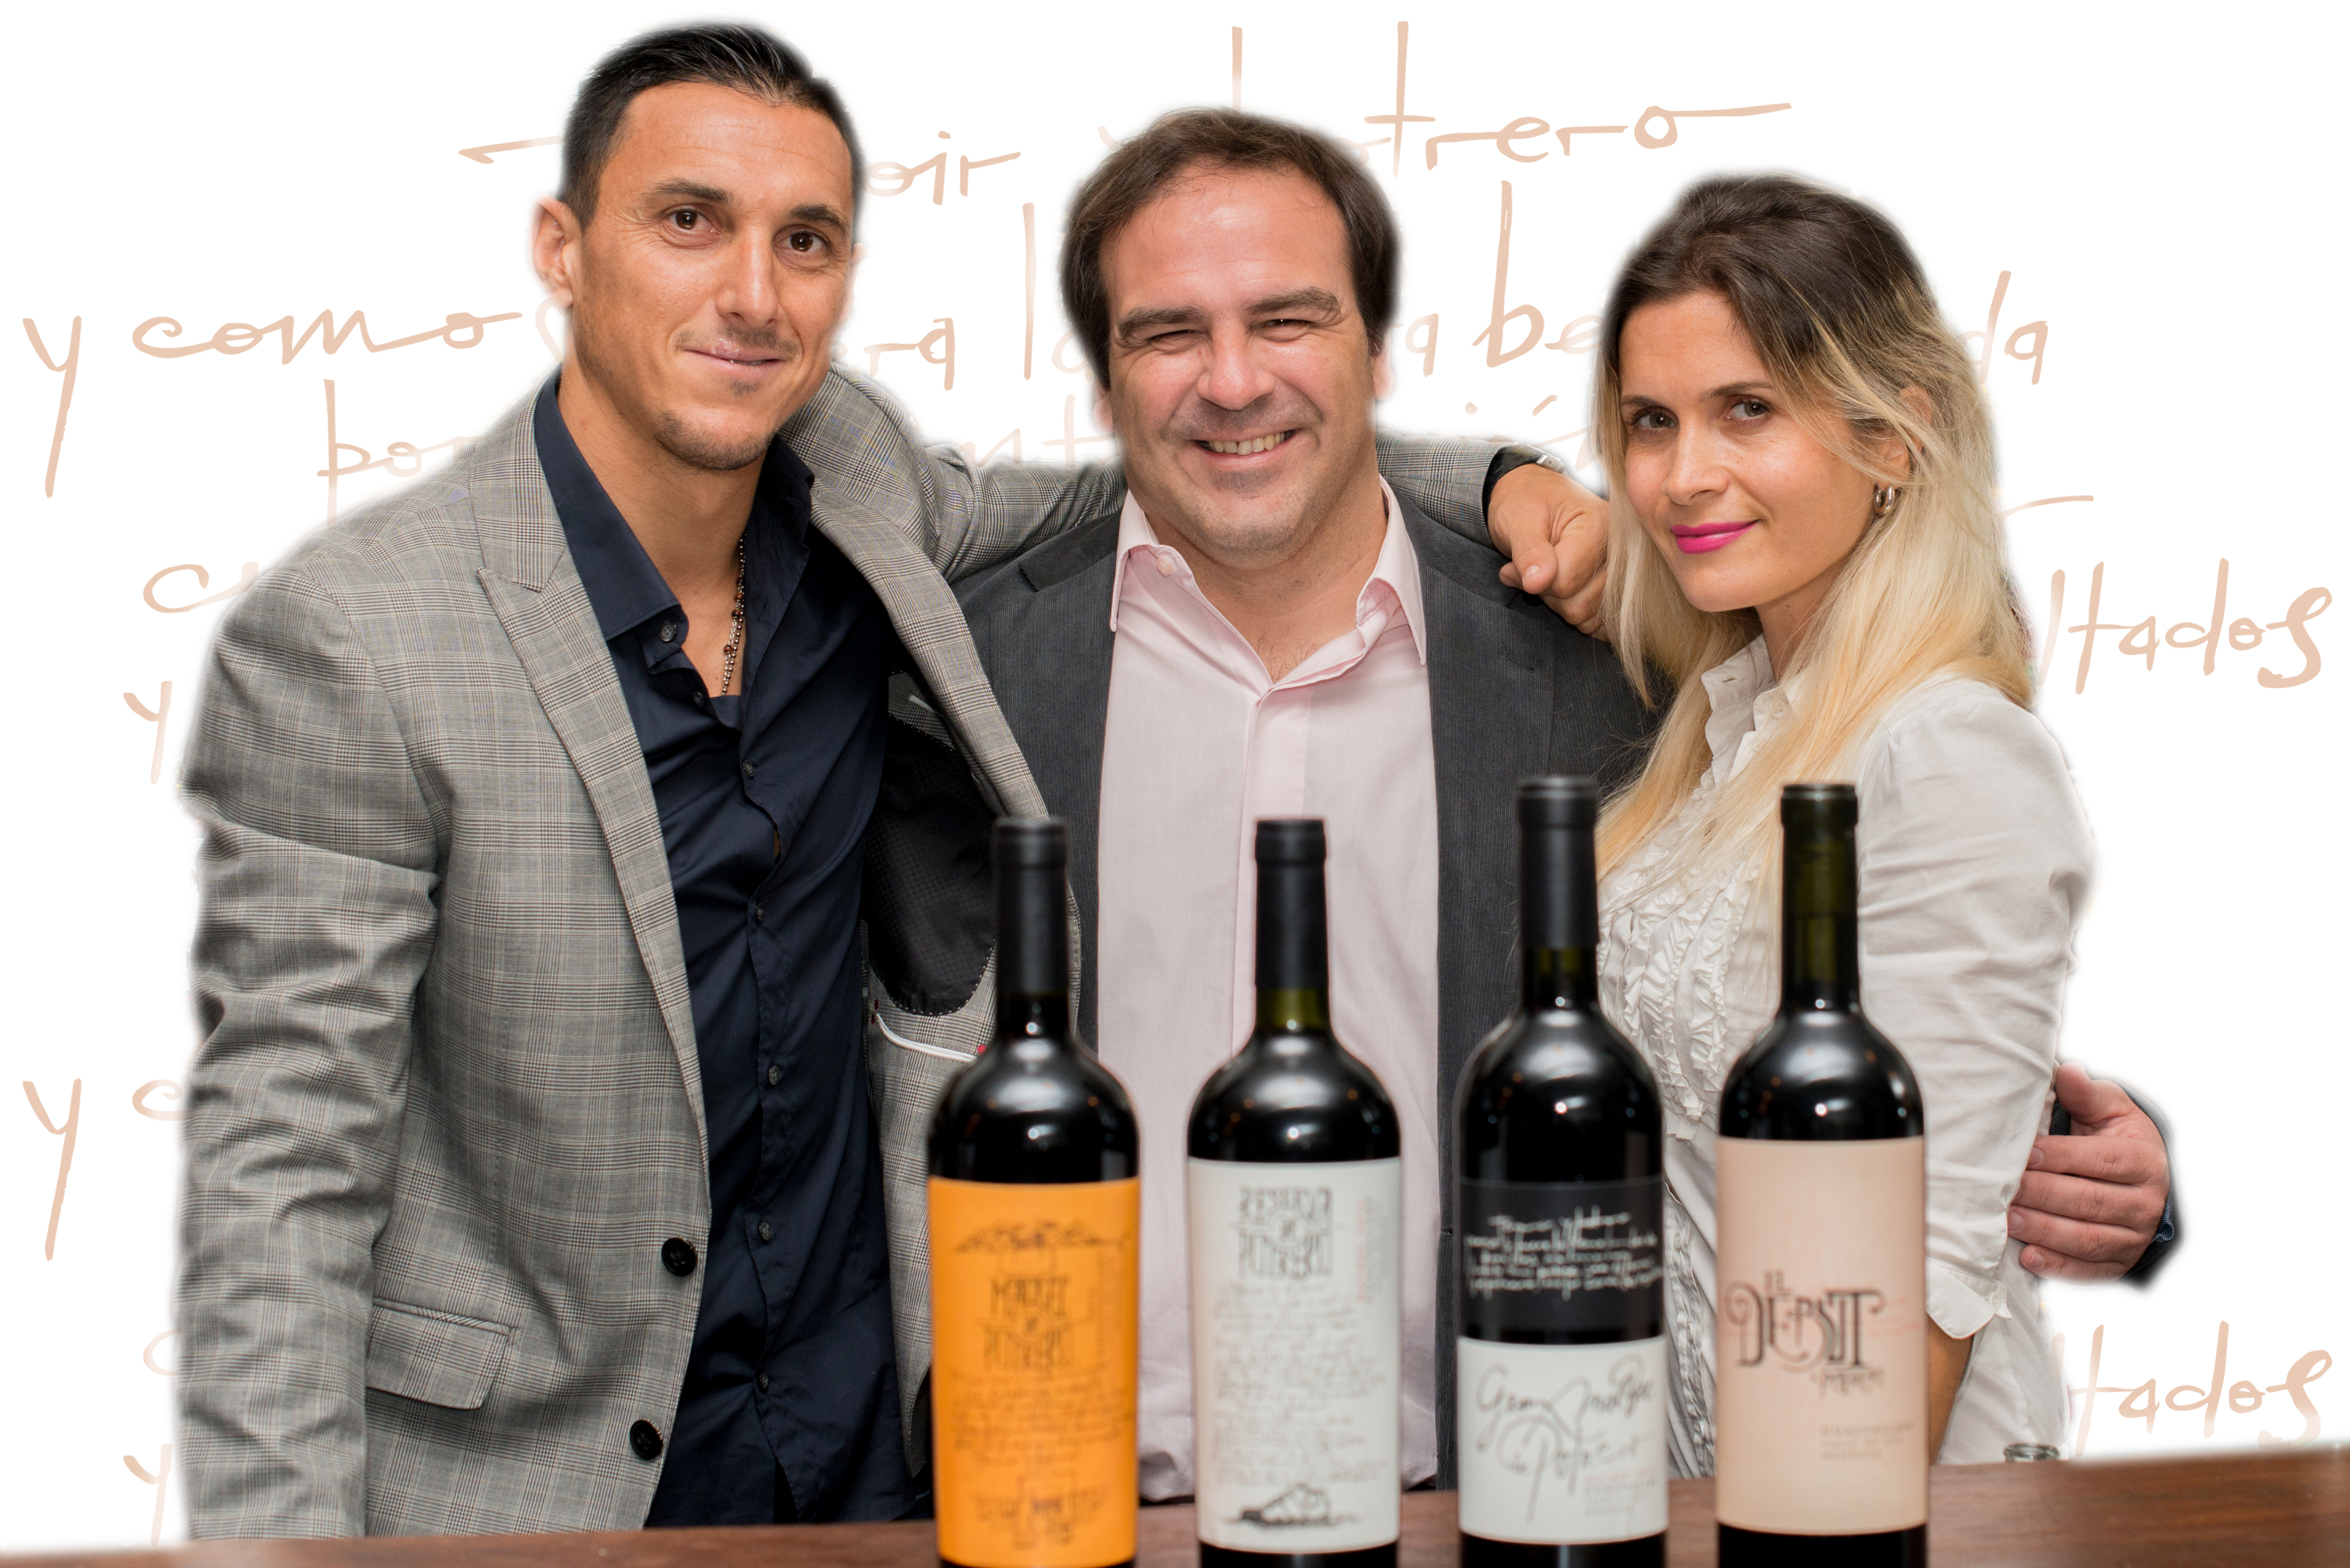 El sueño de Burdisso comenzó en 2010 apoyado en un concepto que liga al fútbol y al vino desde su esencia, la importancia del terroir y del potrero